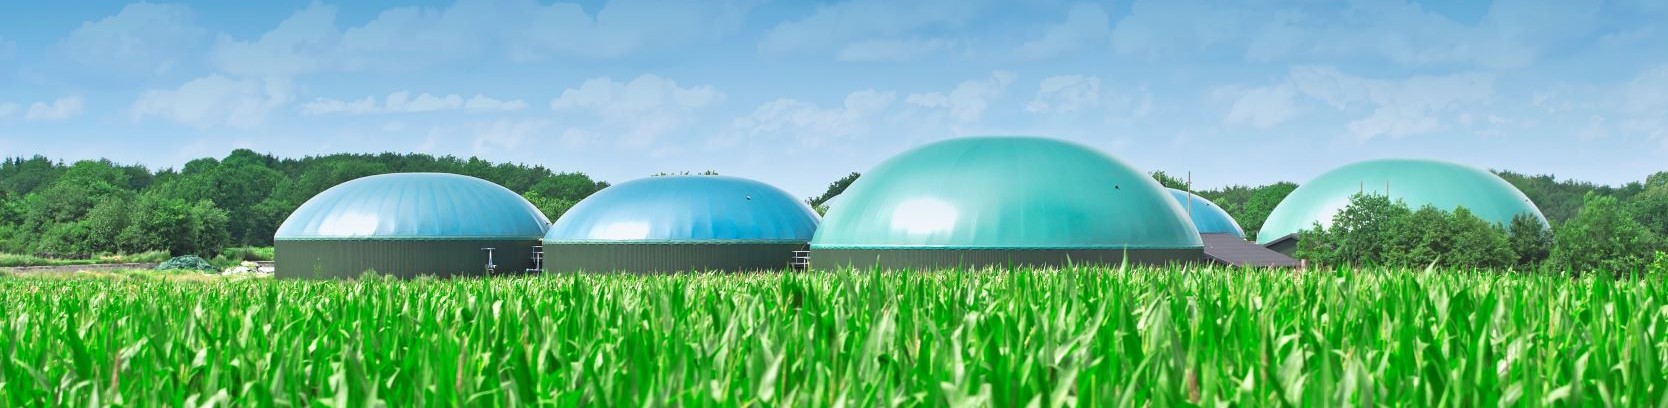 Afbeelding toont bollen in een veld gevuld met groen gas